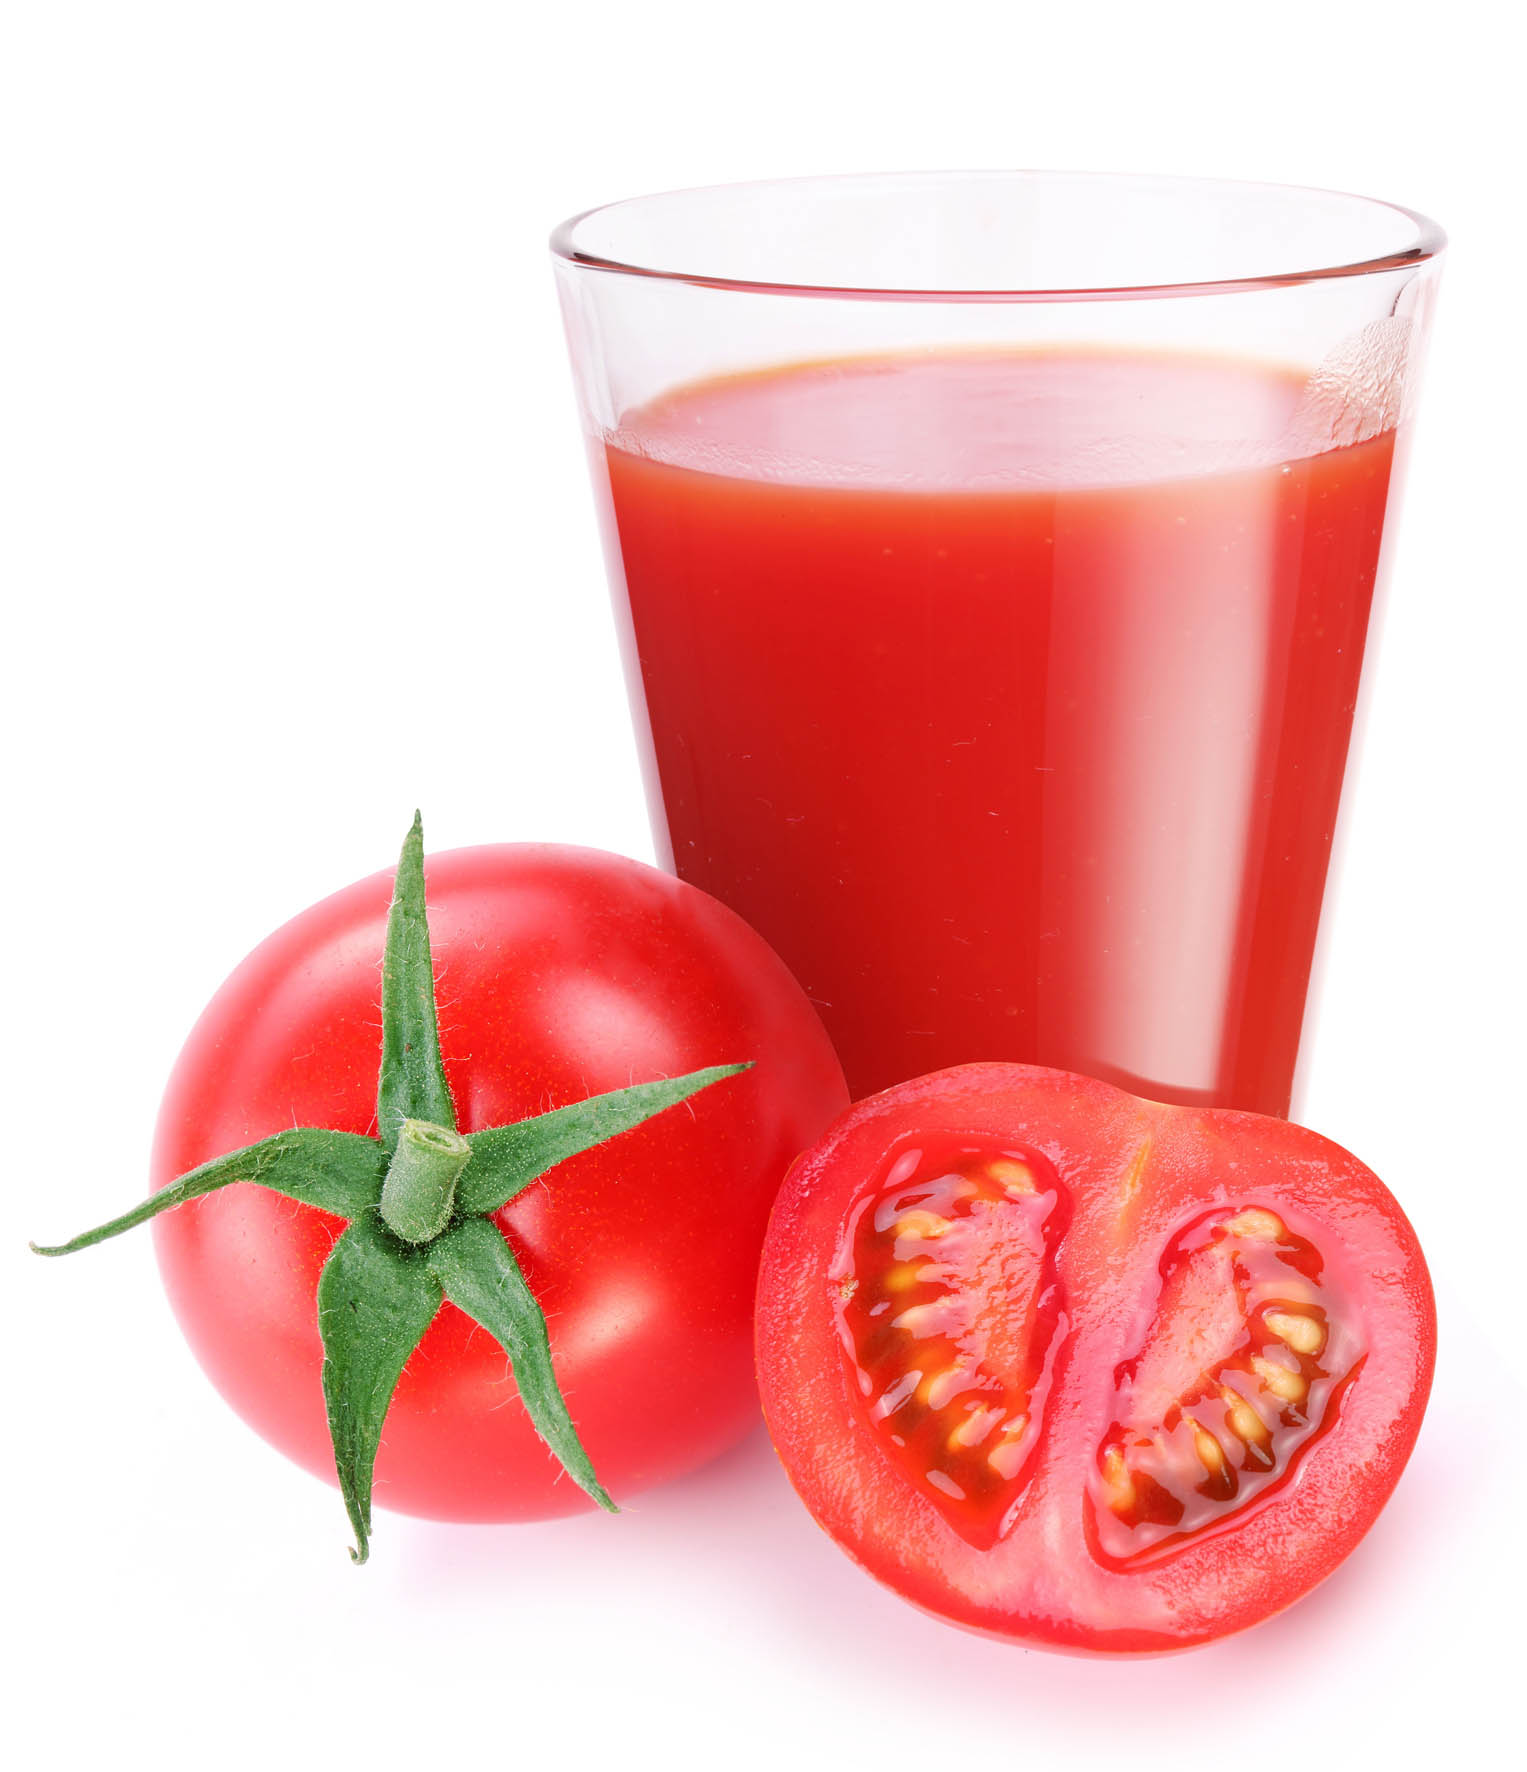 Dùng hỗn hợp bột yến mạch với sữa đông và nước ép cà chua thường xuyên rất tốt cho da